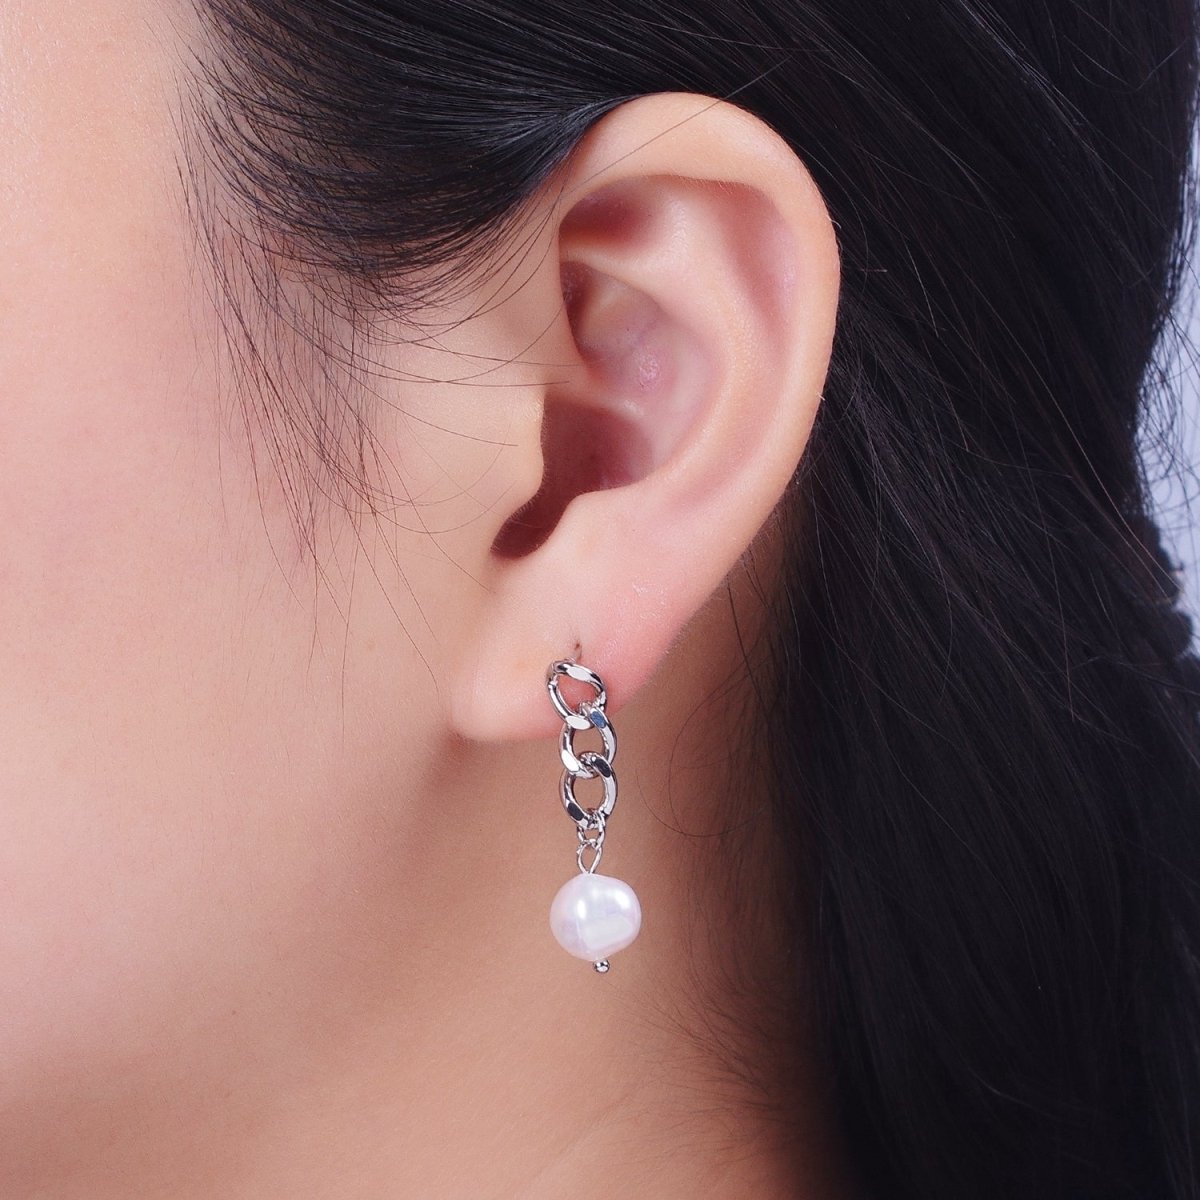 Pearl Dangle Earrings / Chain Earrings Gold Silver Pearl Earrings Stud Earring Curb Chain AE-1082 AE-1083 - DLUXCA